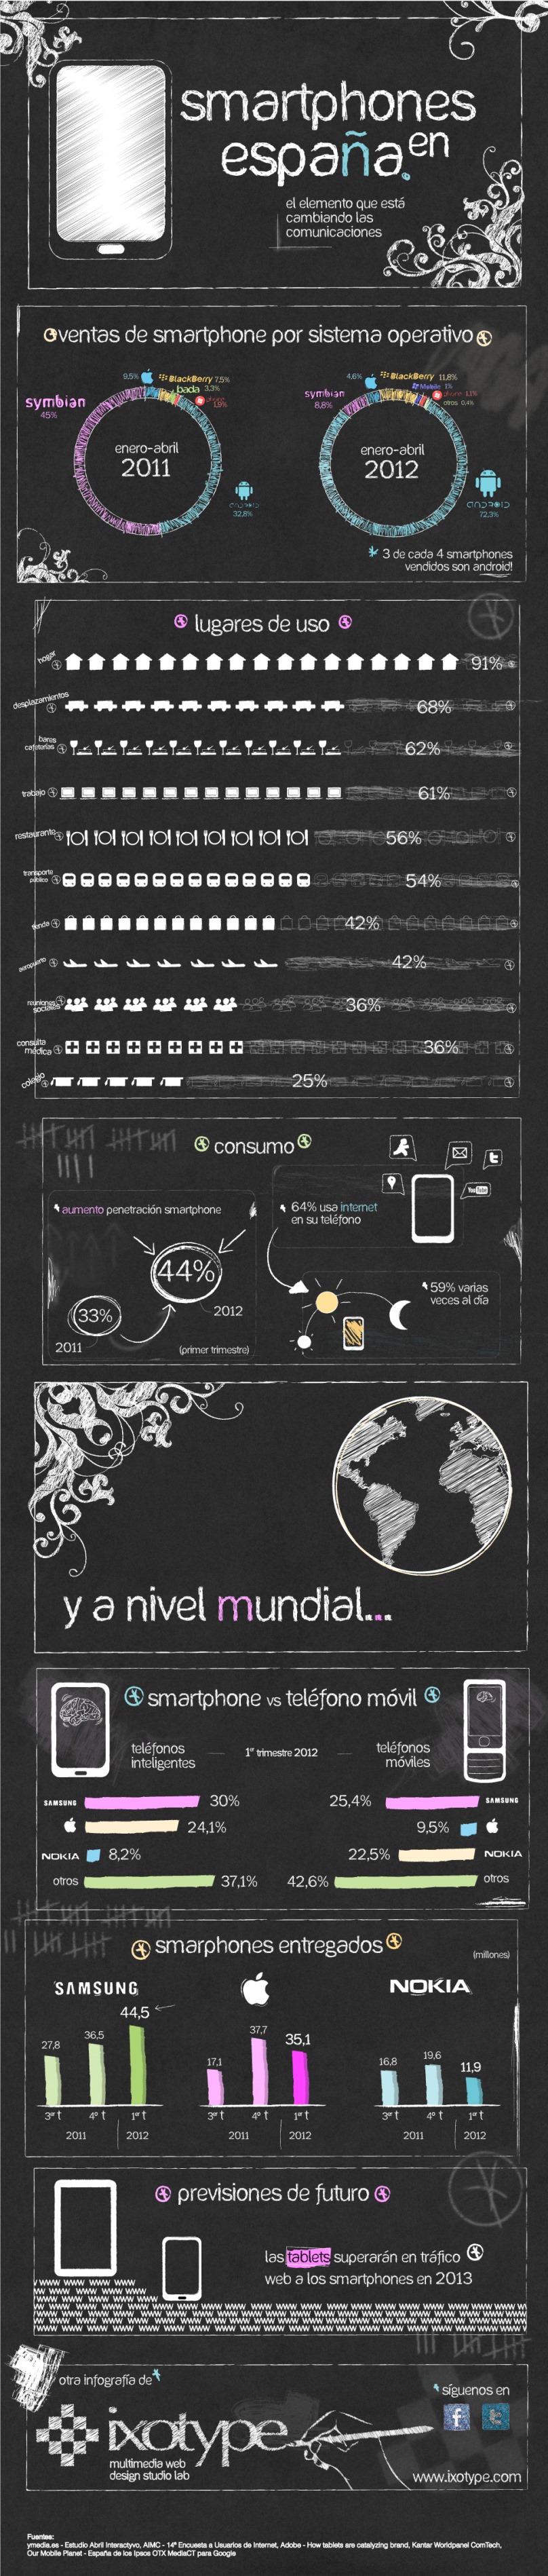 Infografía Smarthpones en España